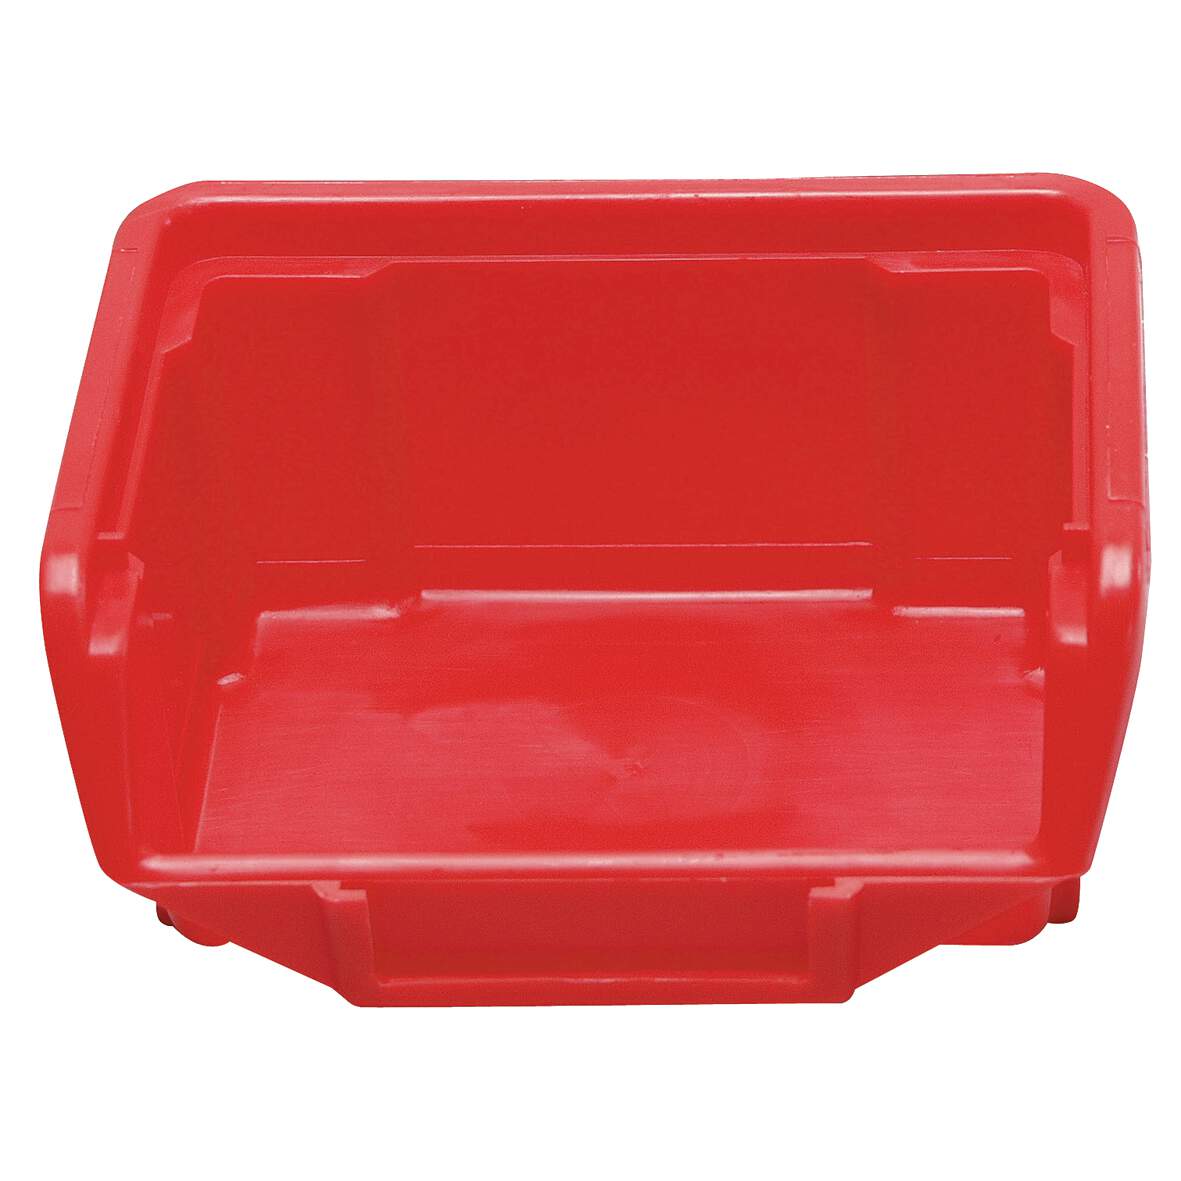 1032516 - Stapelbox rot Größe 1